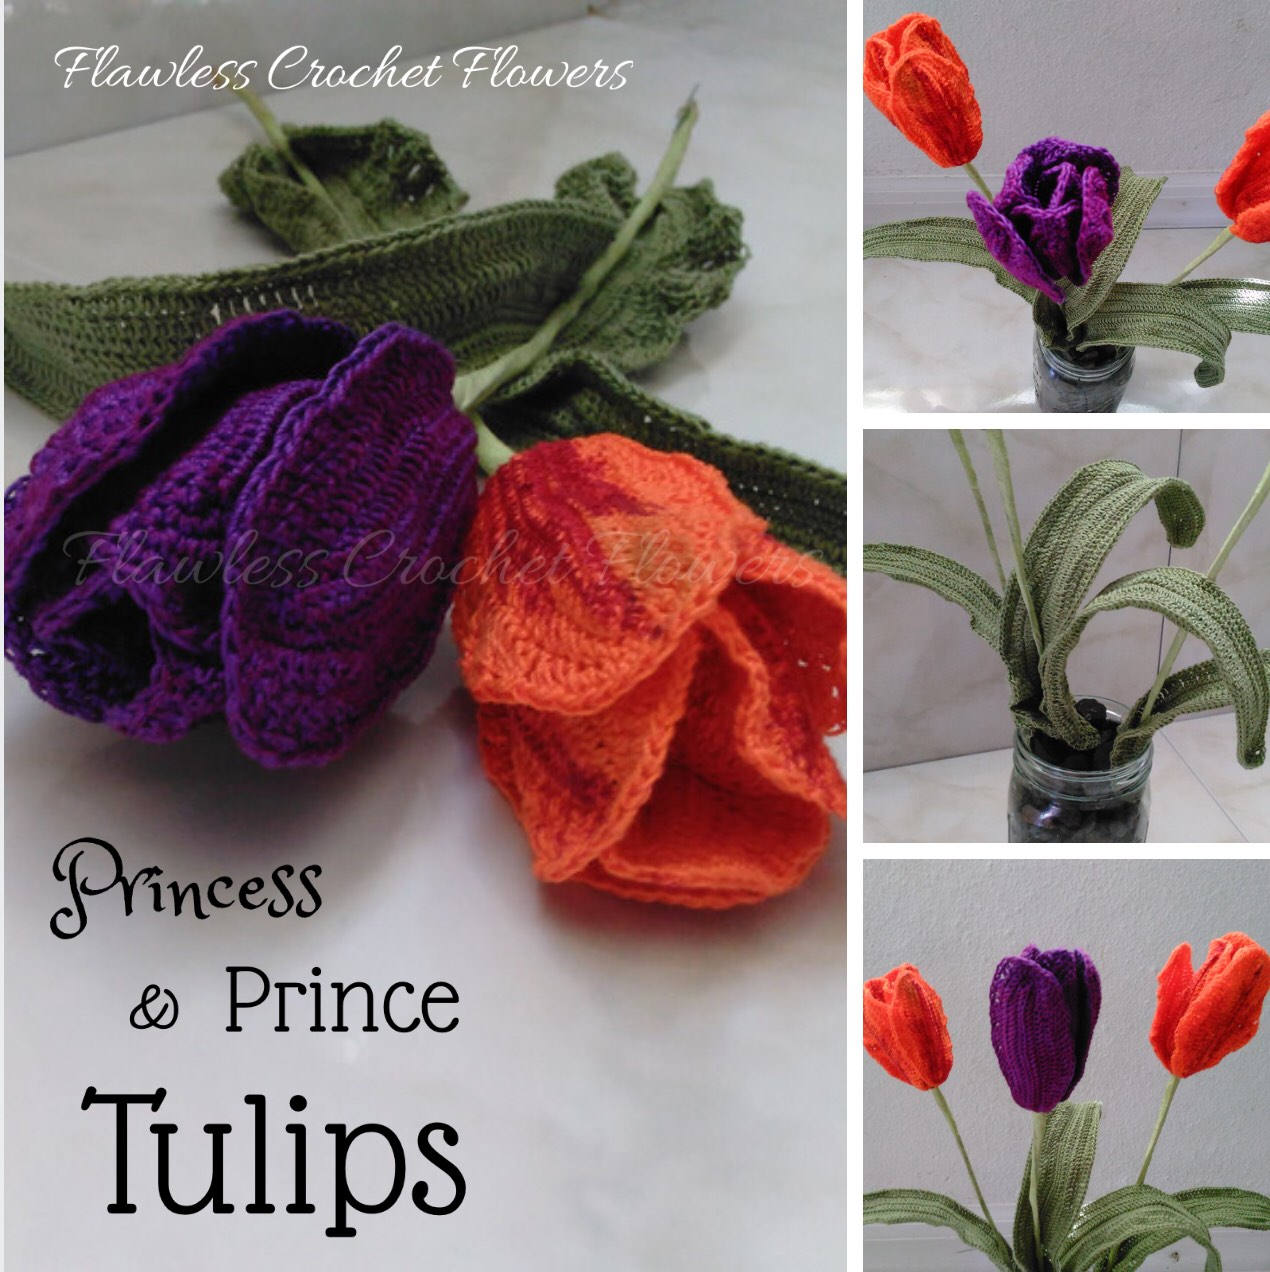 Prince & Princess Tulips